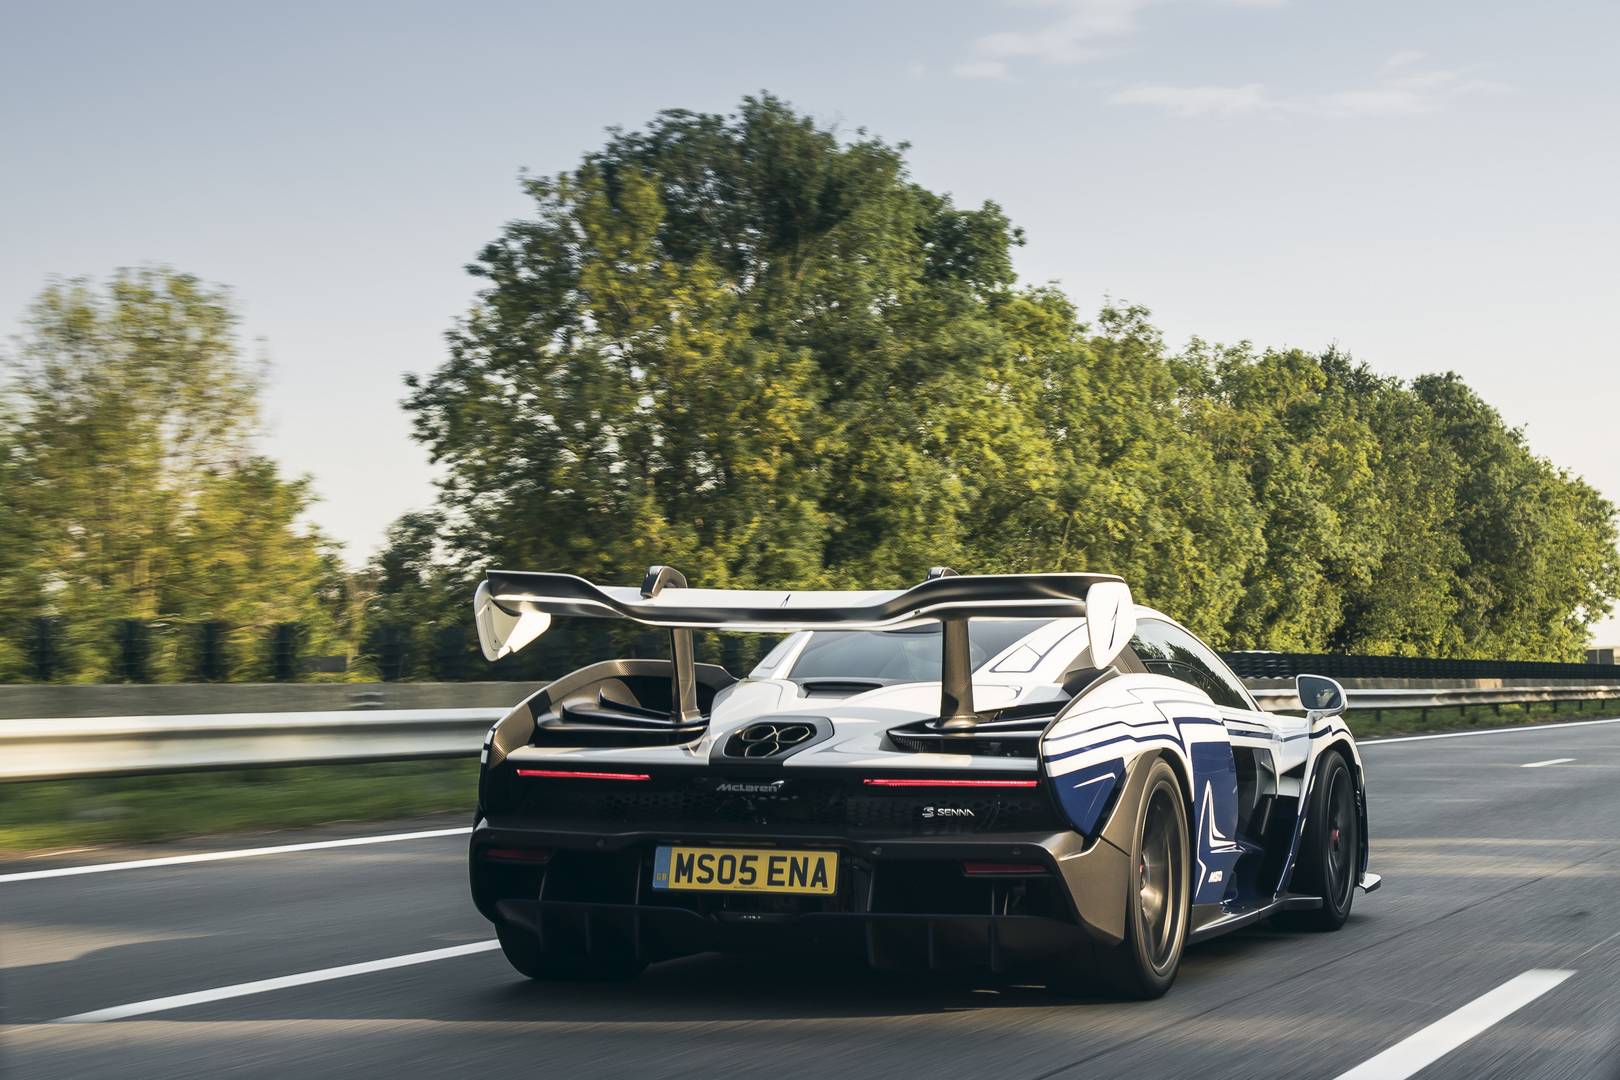 Шасси номер 1 демонстрируют юбилейную белую окраску с синей ливреей Aurora Blue, очень похожей на Bugatti Veyron L'Or Blanc, но с совершенно другой концепцией дизайна. Это был заказной дизайн, выполненный McLaren Special Operations (MSO)!